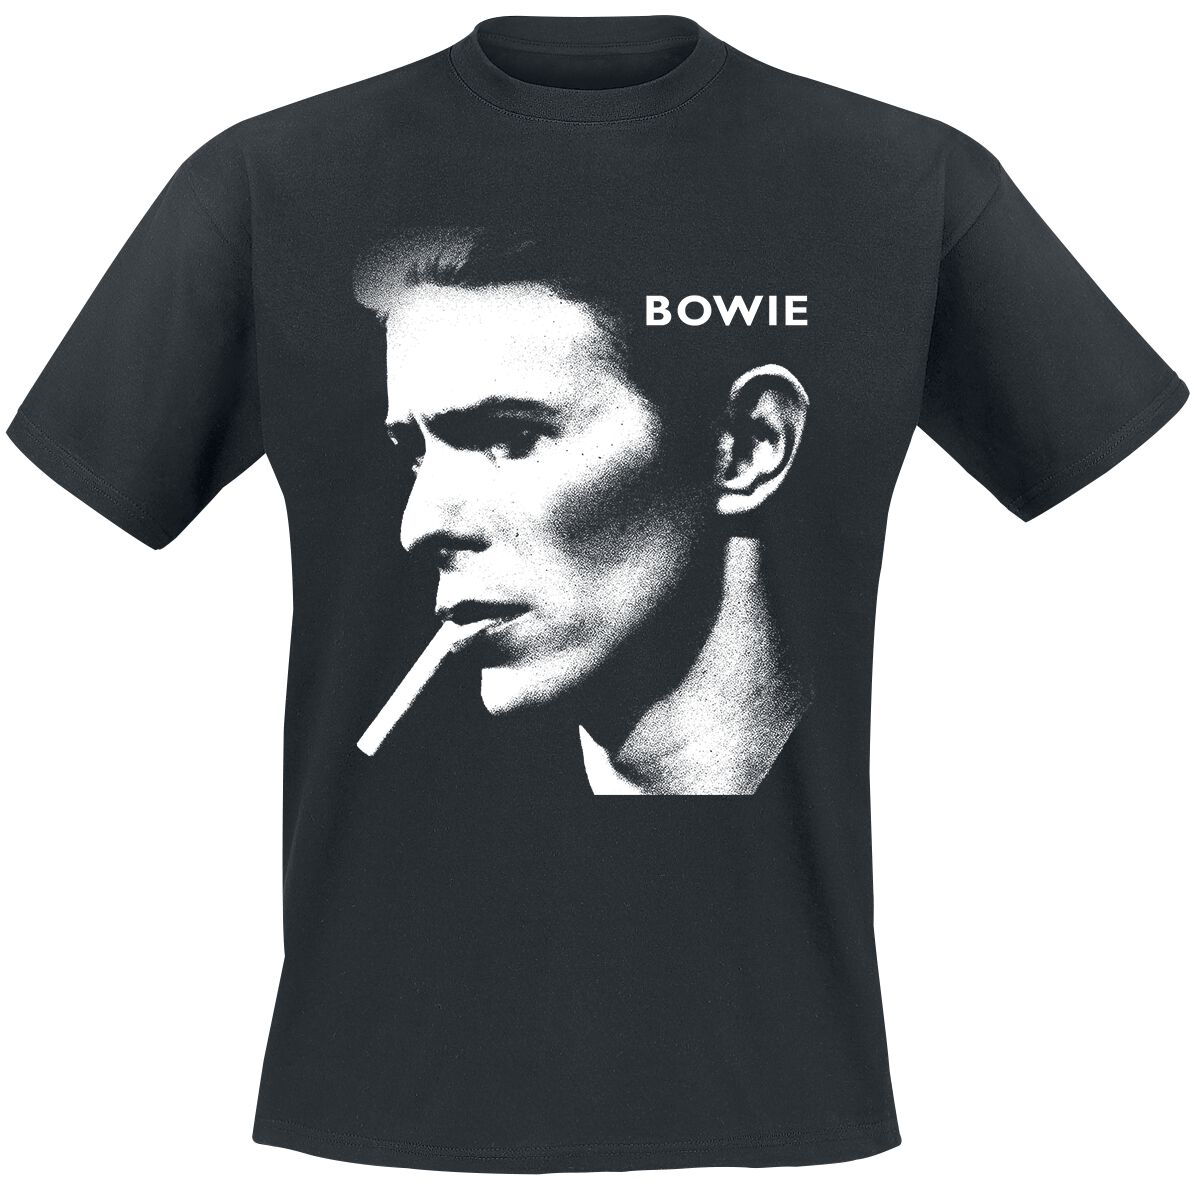 David Bowie T-Shirt - Grainy Smoke - S bis XXL - für Männer - Größe L - schwarz  - Lizenziertes Merchandise!